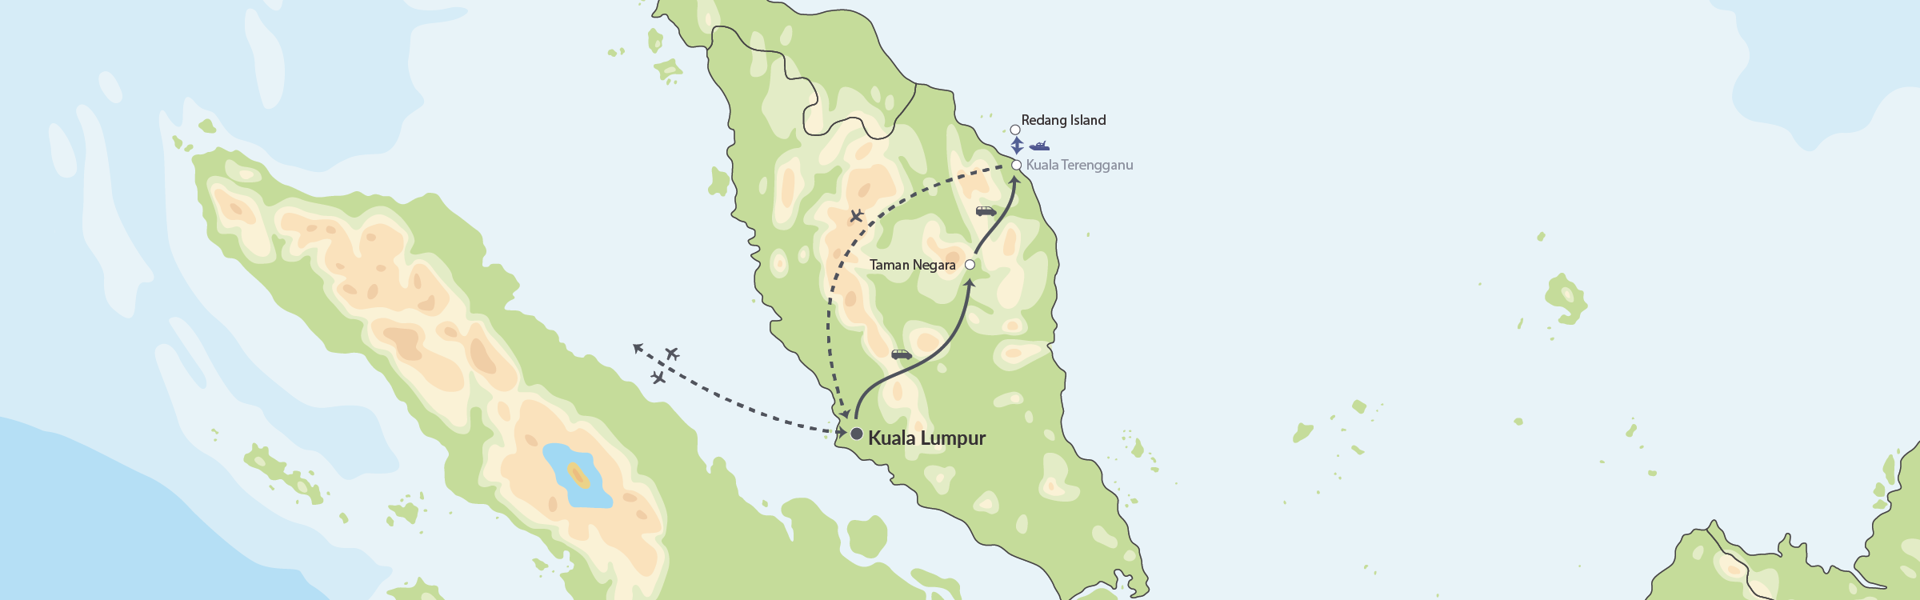 109174 Eventyr I Regnskoven Og Badeferie På Tropeøen Redang Map